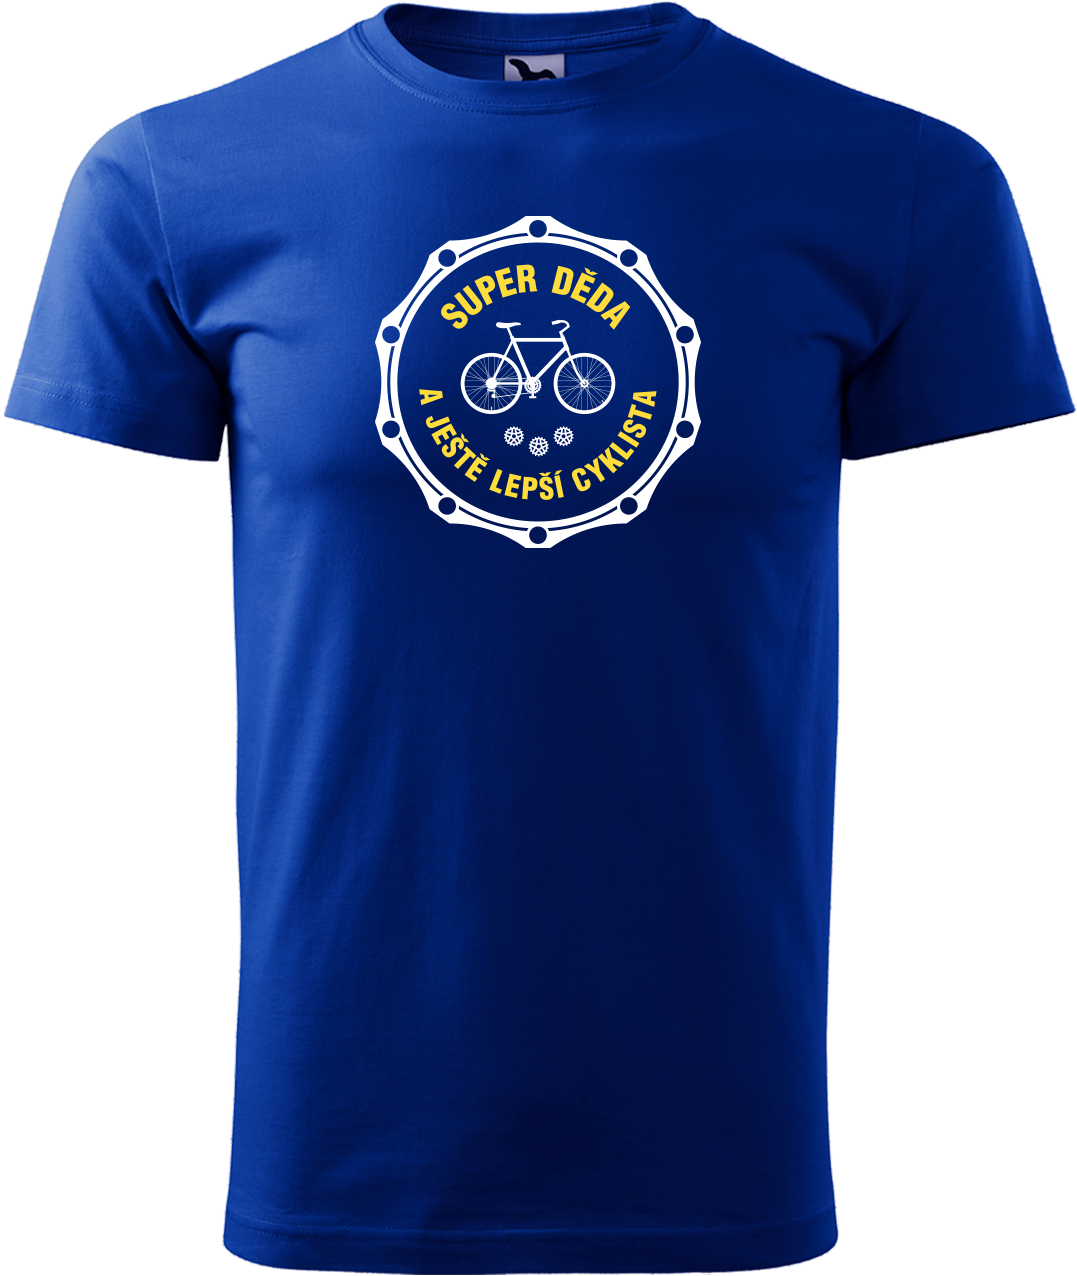 Pánské tričko pro cyklistu - Super děda a ještě lepší cyklista Velikost: 4XL, Barva: Námořní modrá (02)